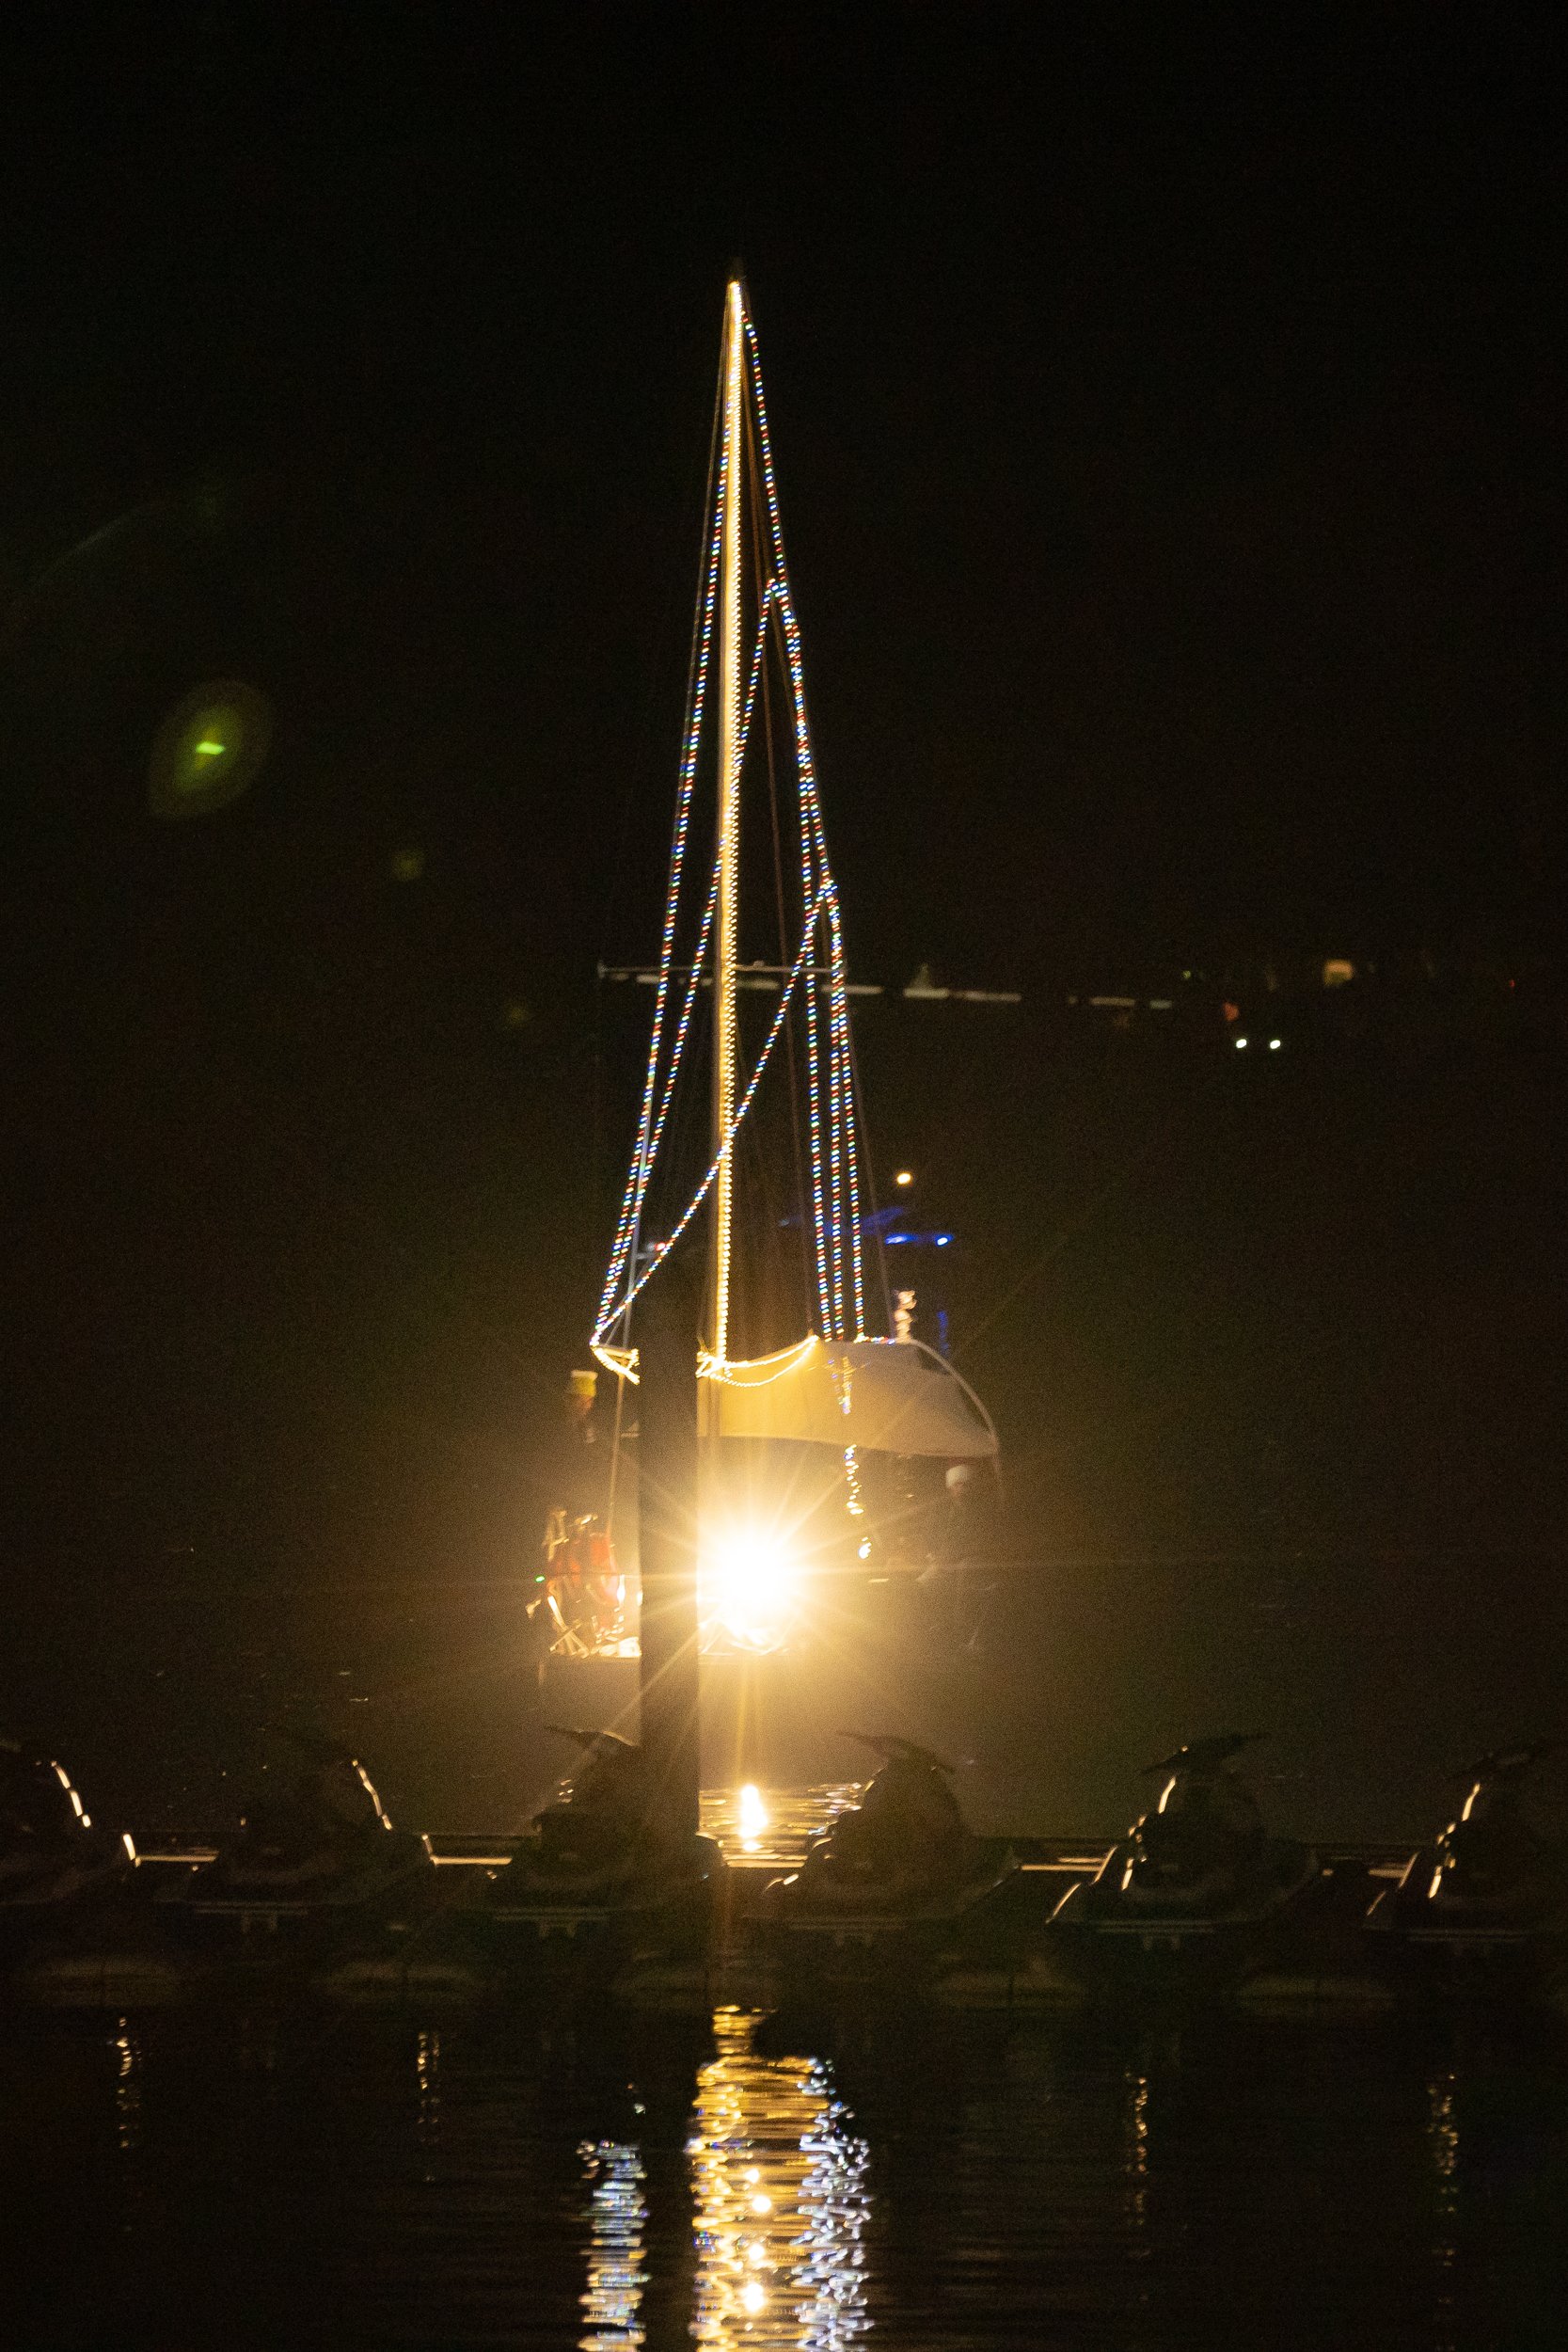 bright light on boat at night